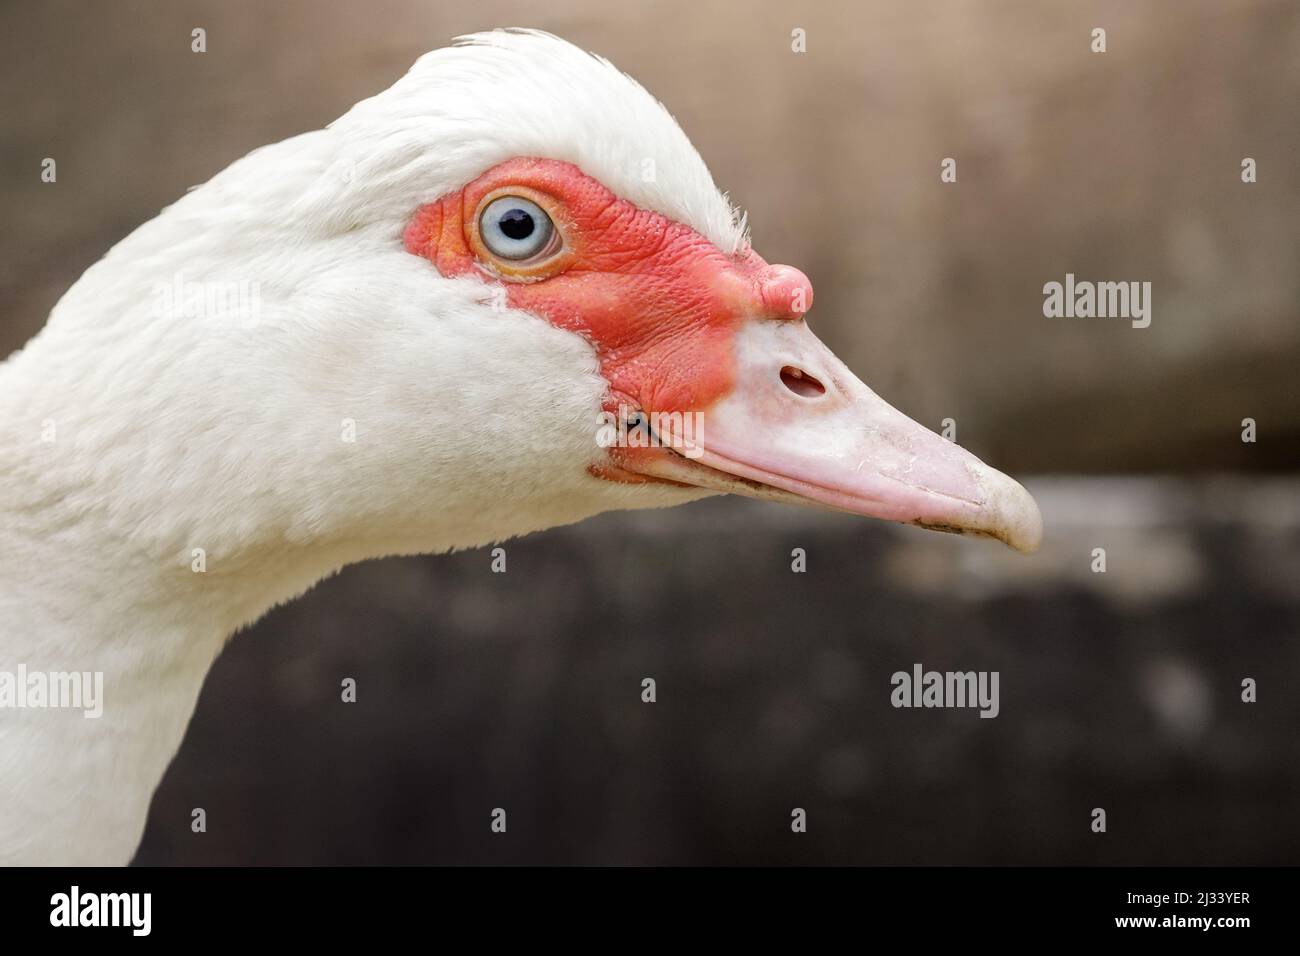 Gros plan du visage de canard musqué blanc en profil. Les détails du visage d'oiseau sont clairement visibles, sur fond marron flou. Banque D'Images